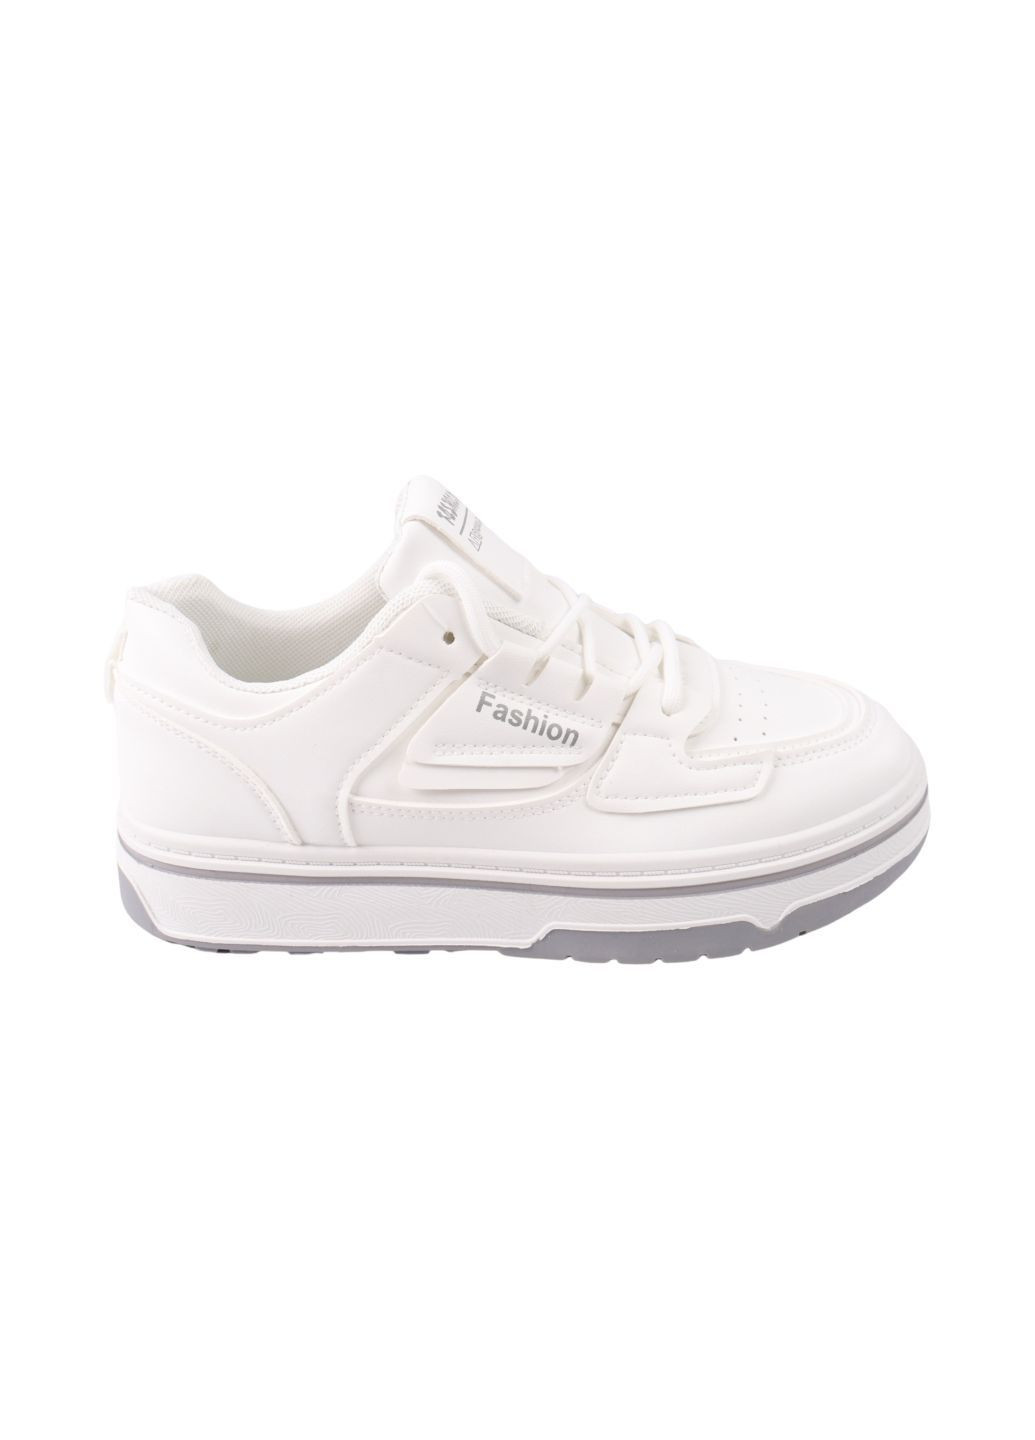 Белые кроссовки женские белые Fashion 121-24DTS